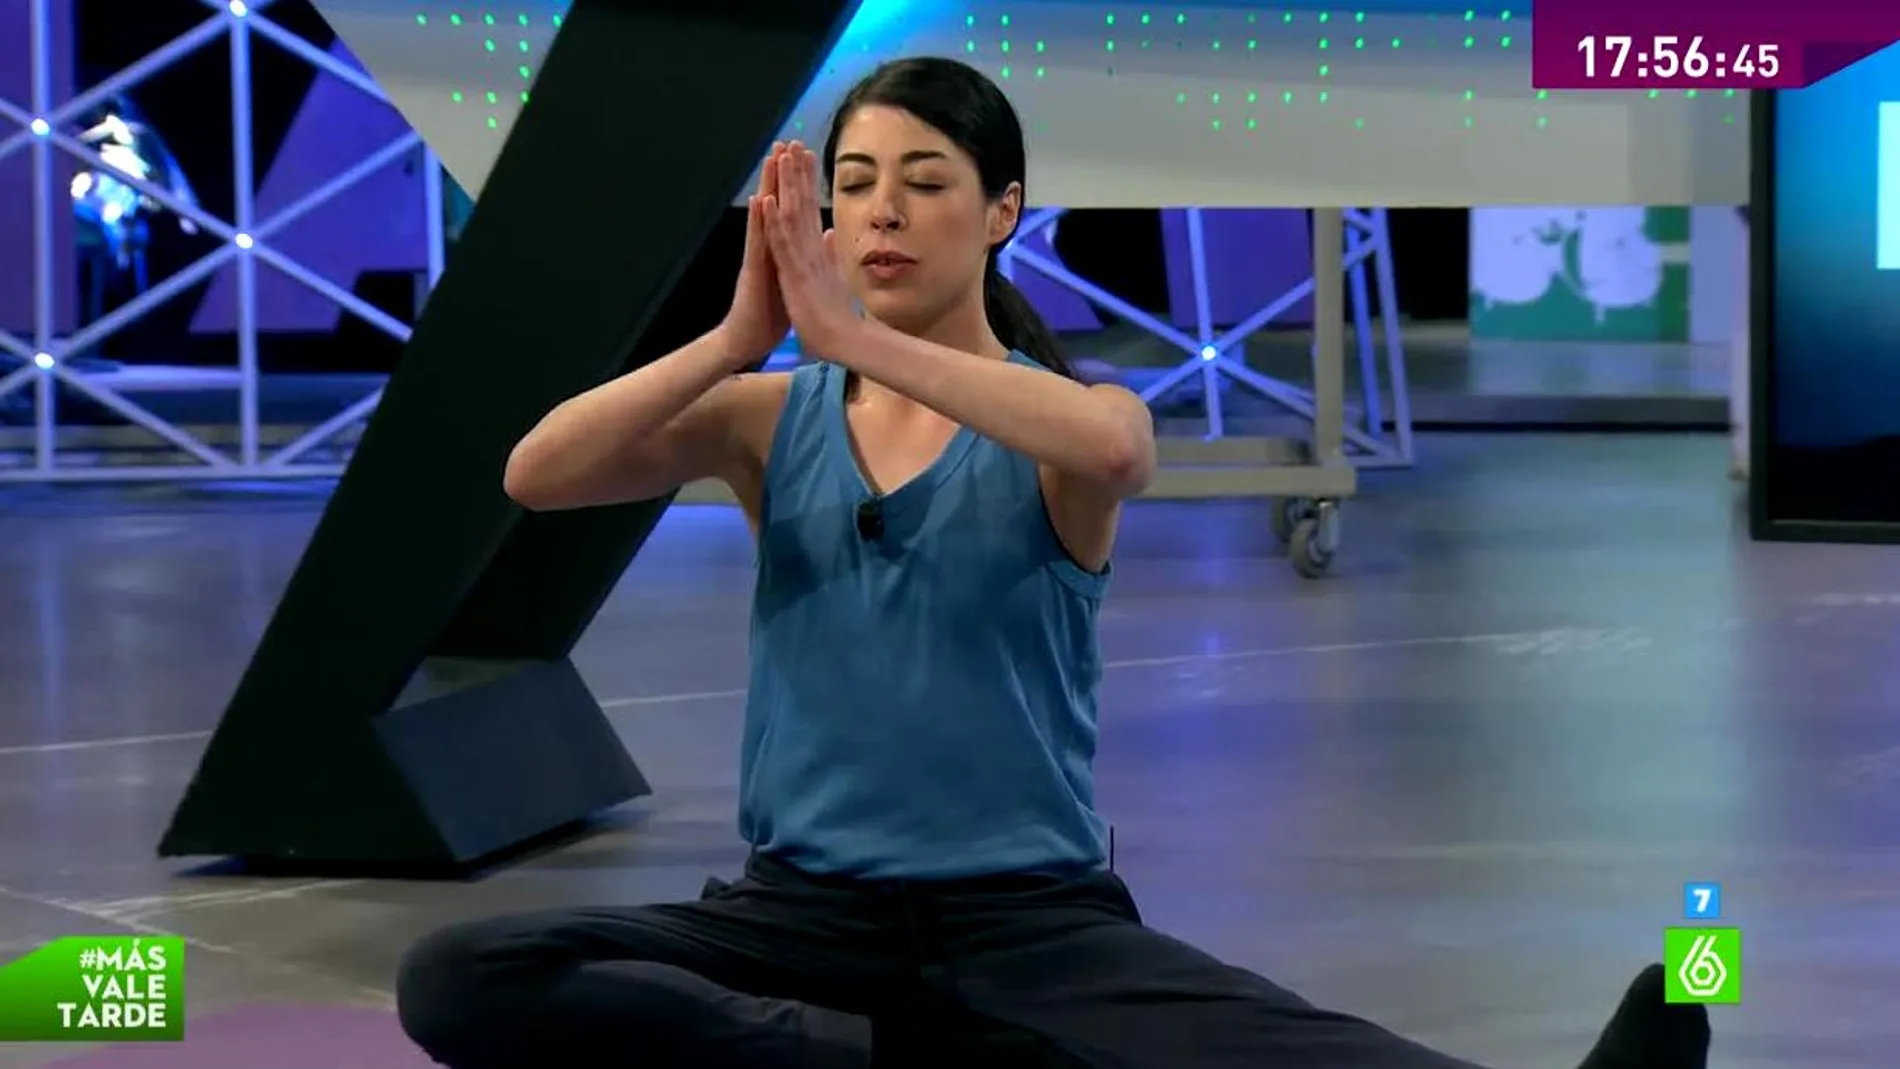 Práctica del yoga